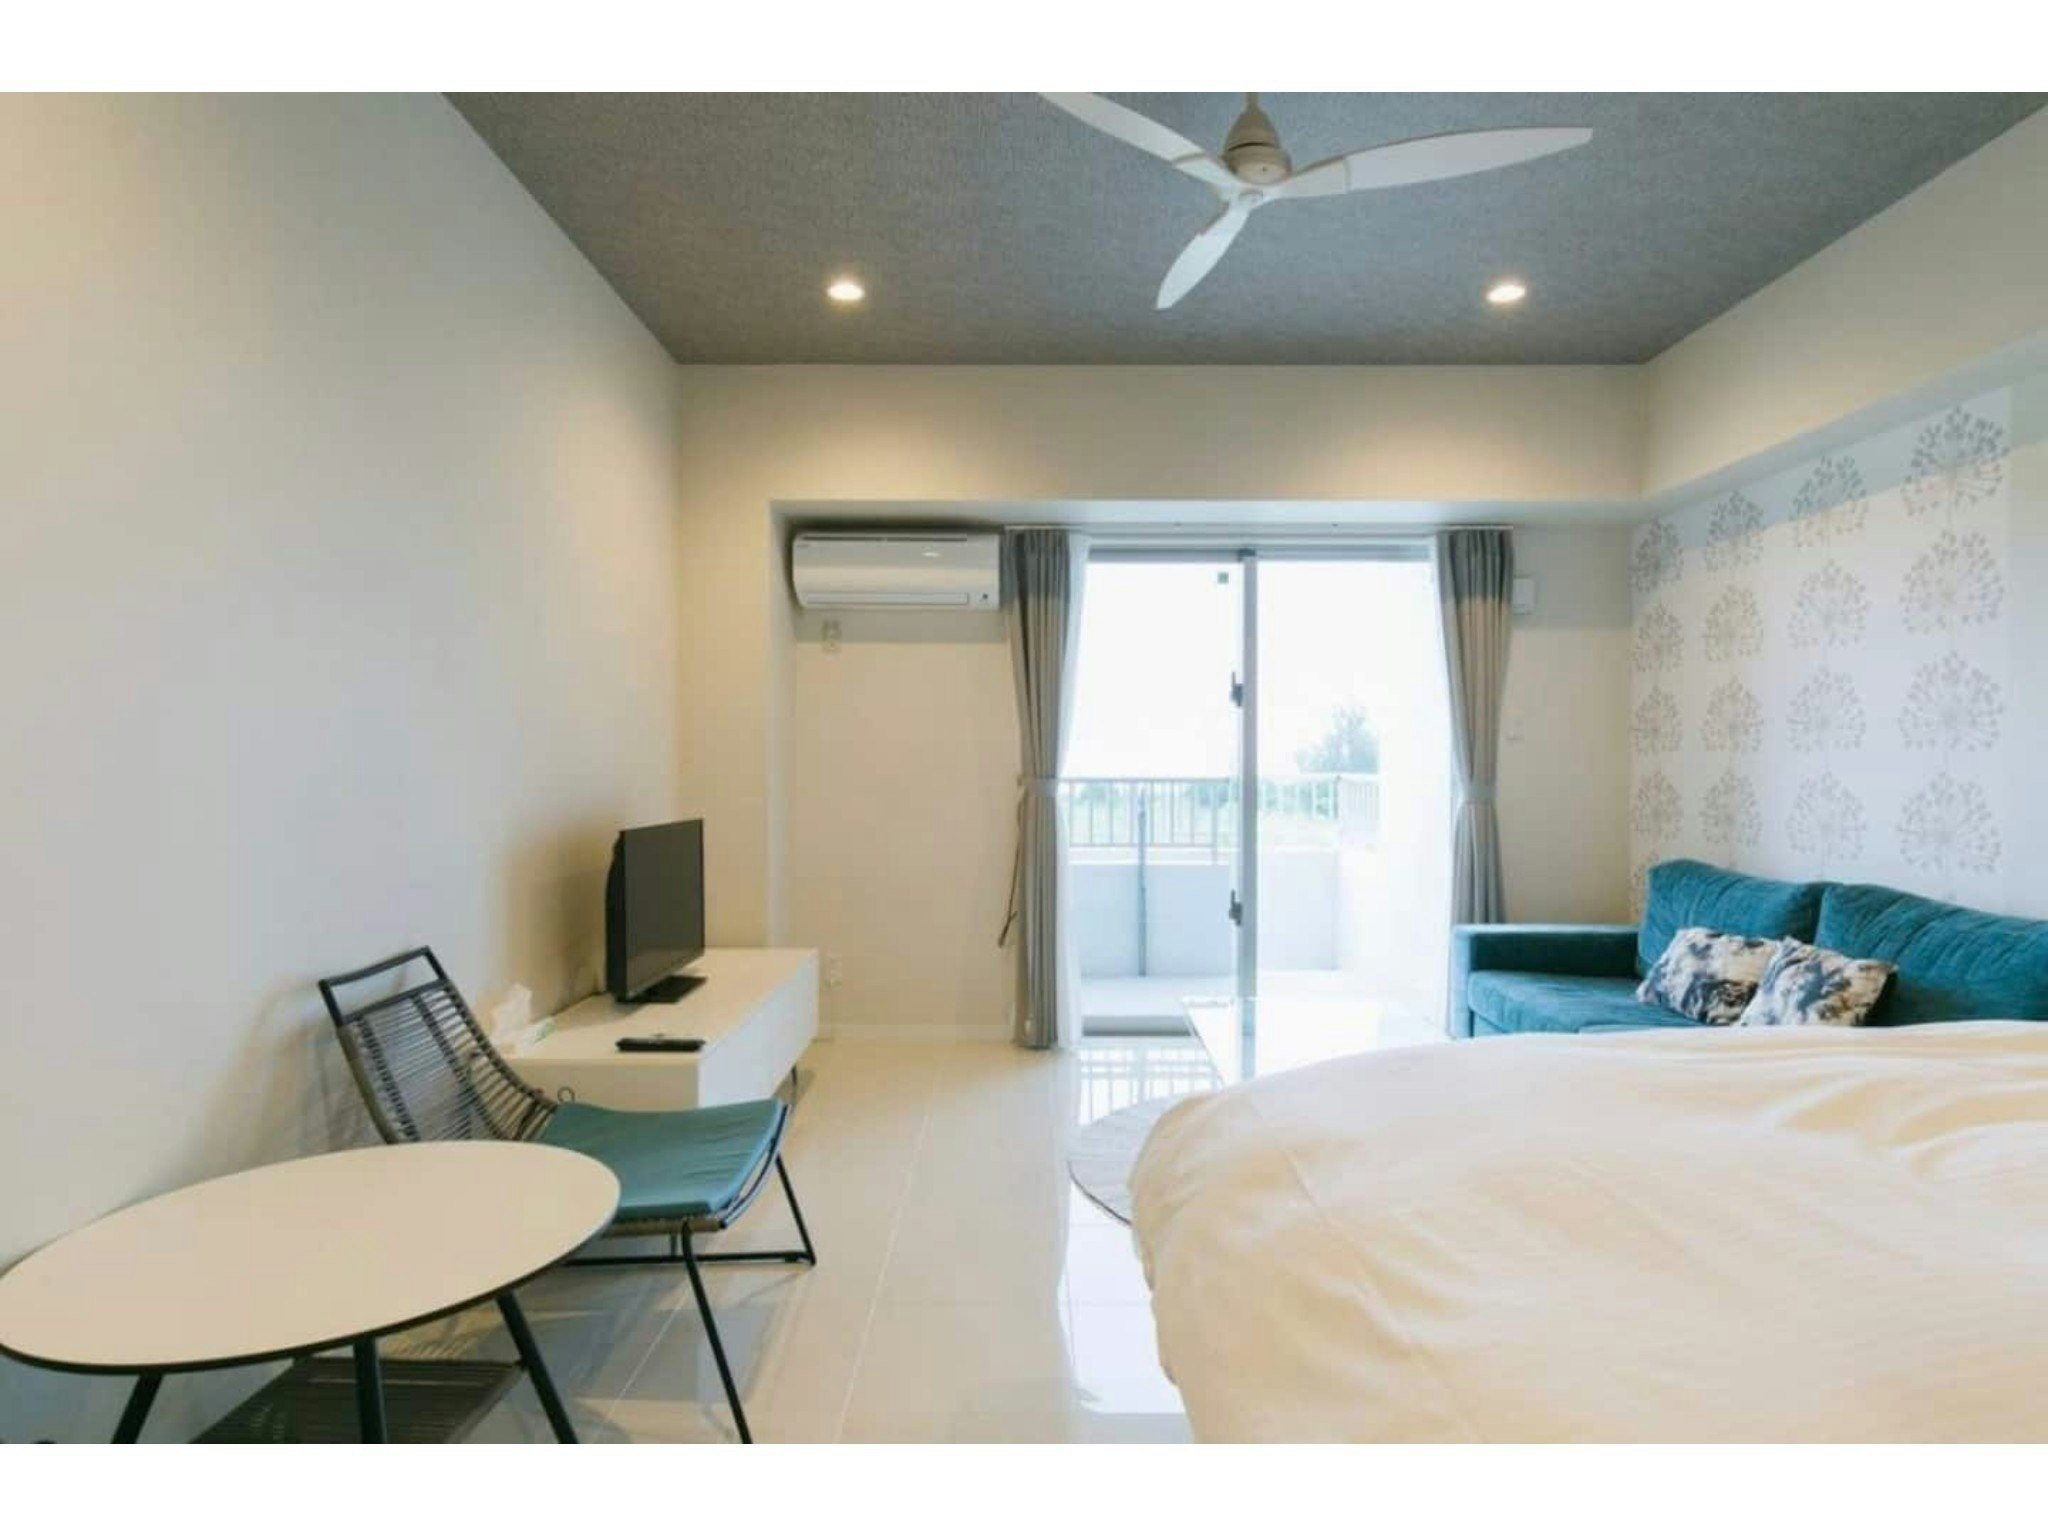 【102】爽やかなブルーの家具が、真栄田岬の海と空に溶け込みます!「ロンバケ沖縄」